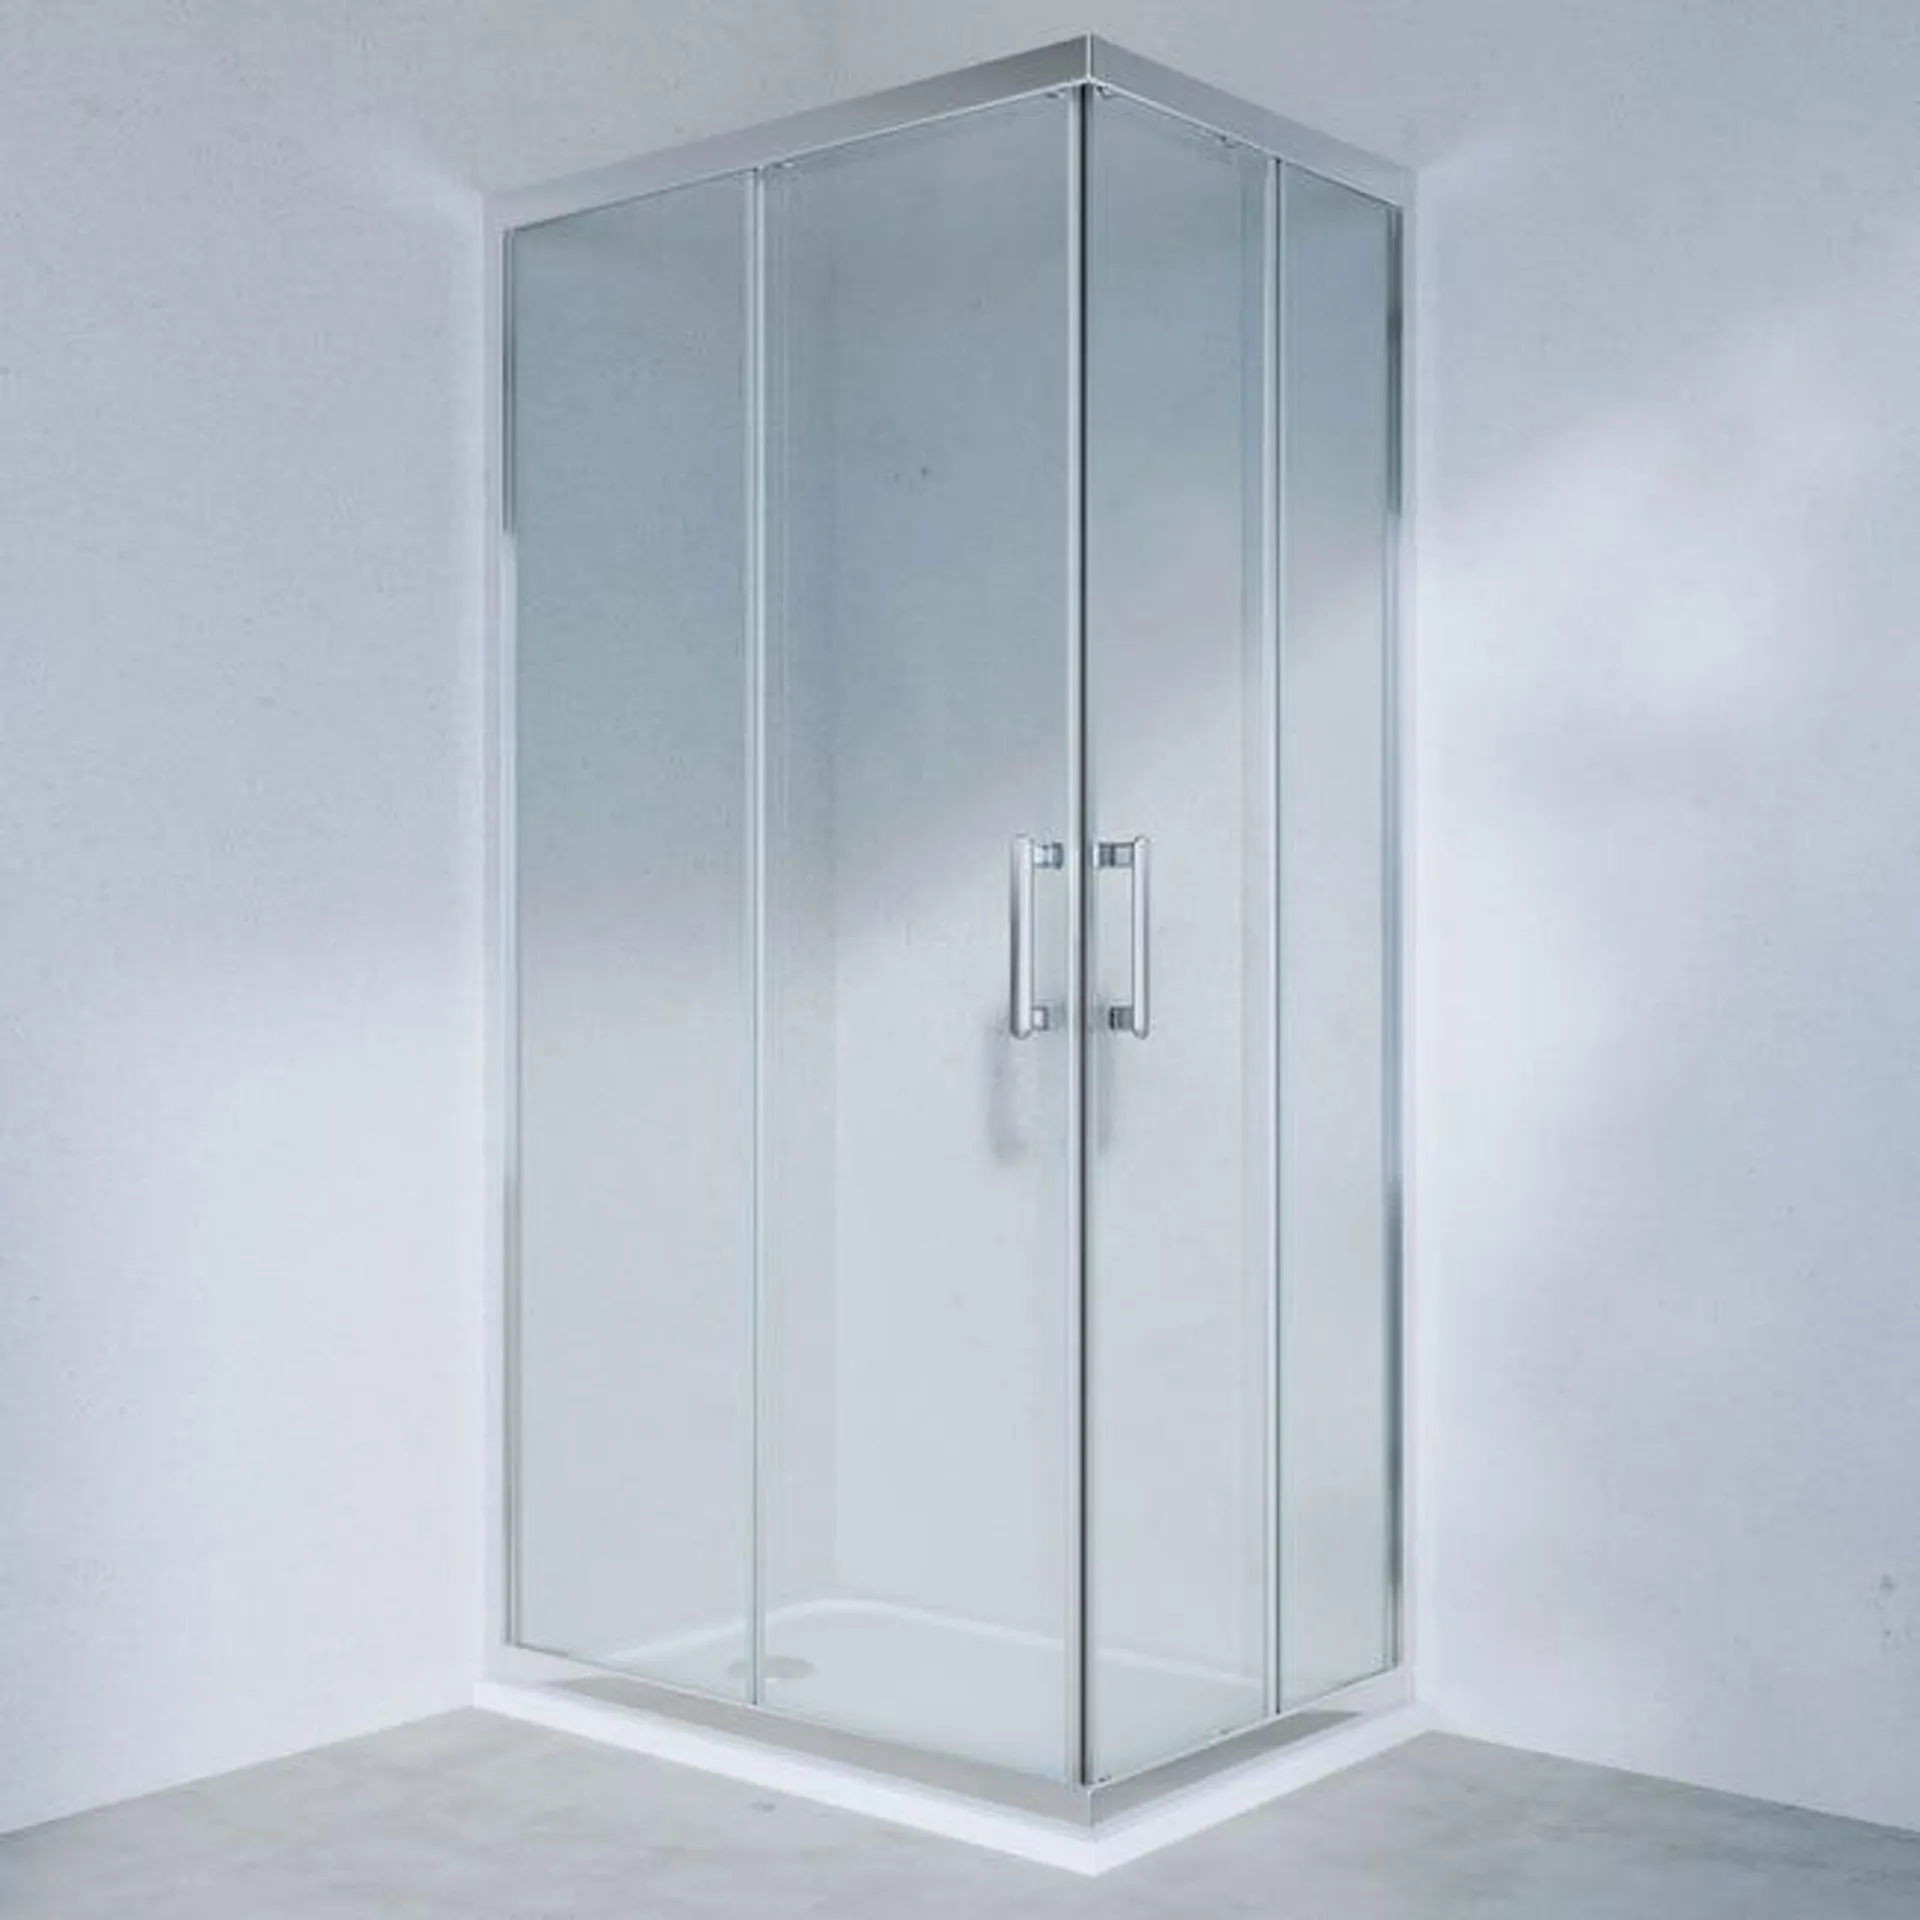 Box doccia rettangolare scorrevole Easy 90 x 70 cm, H 190 cm in vetro, spessore 6 mm trasparente cromato Vedi i dettagli del prodotto